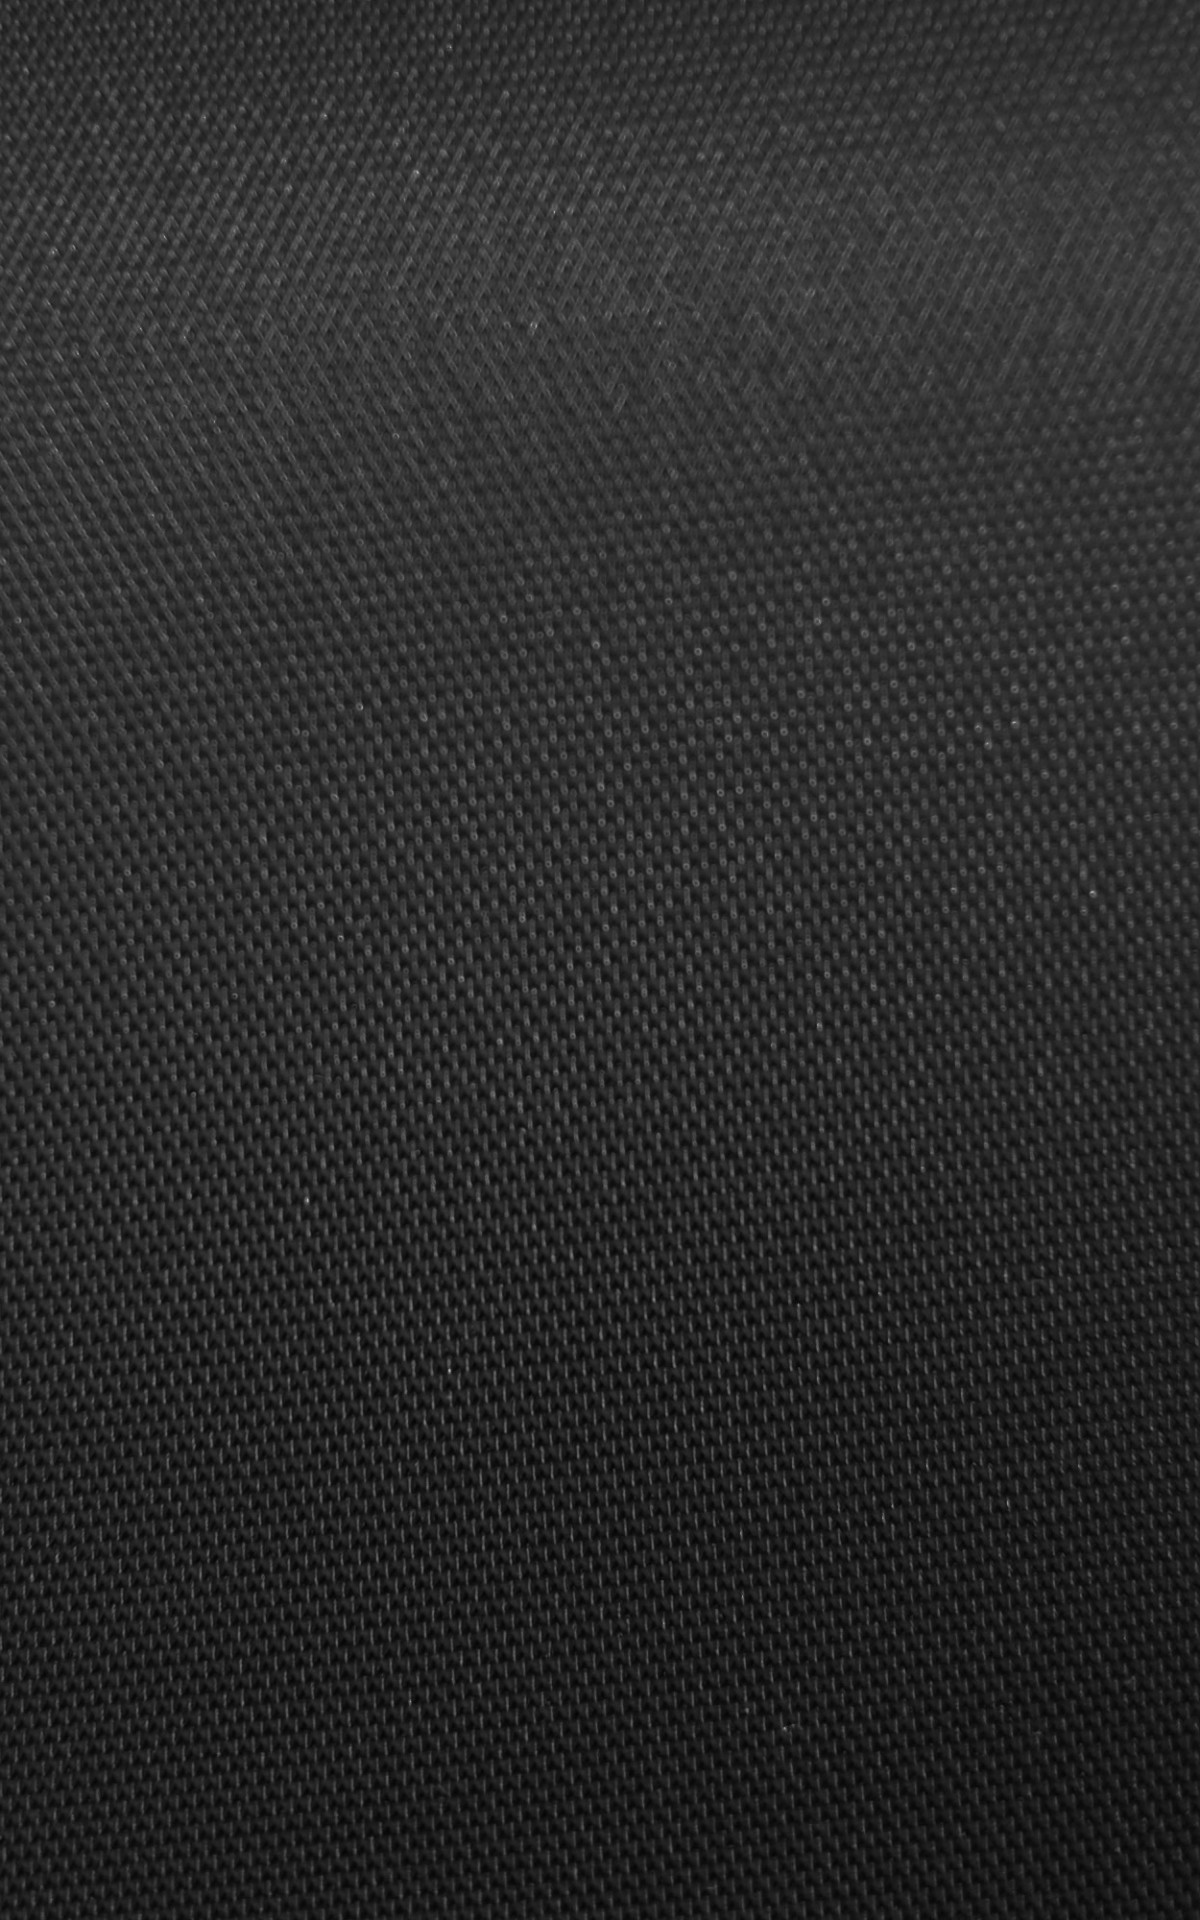 1200x1920 Flat Black Wallpaper